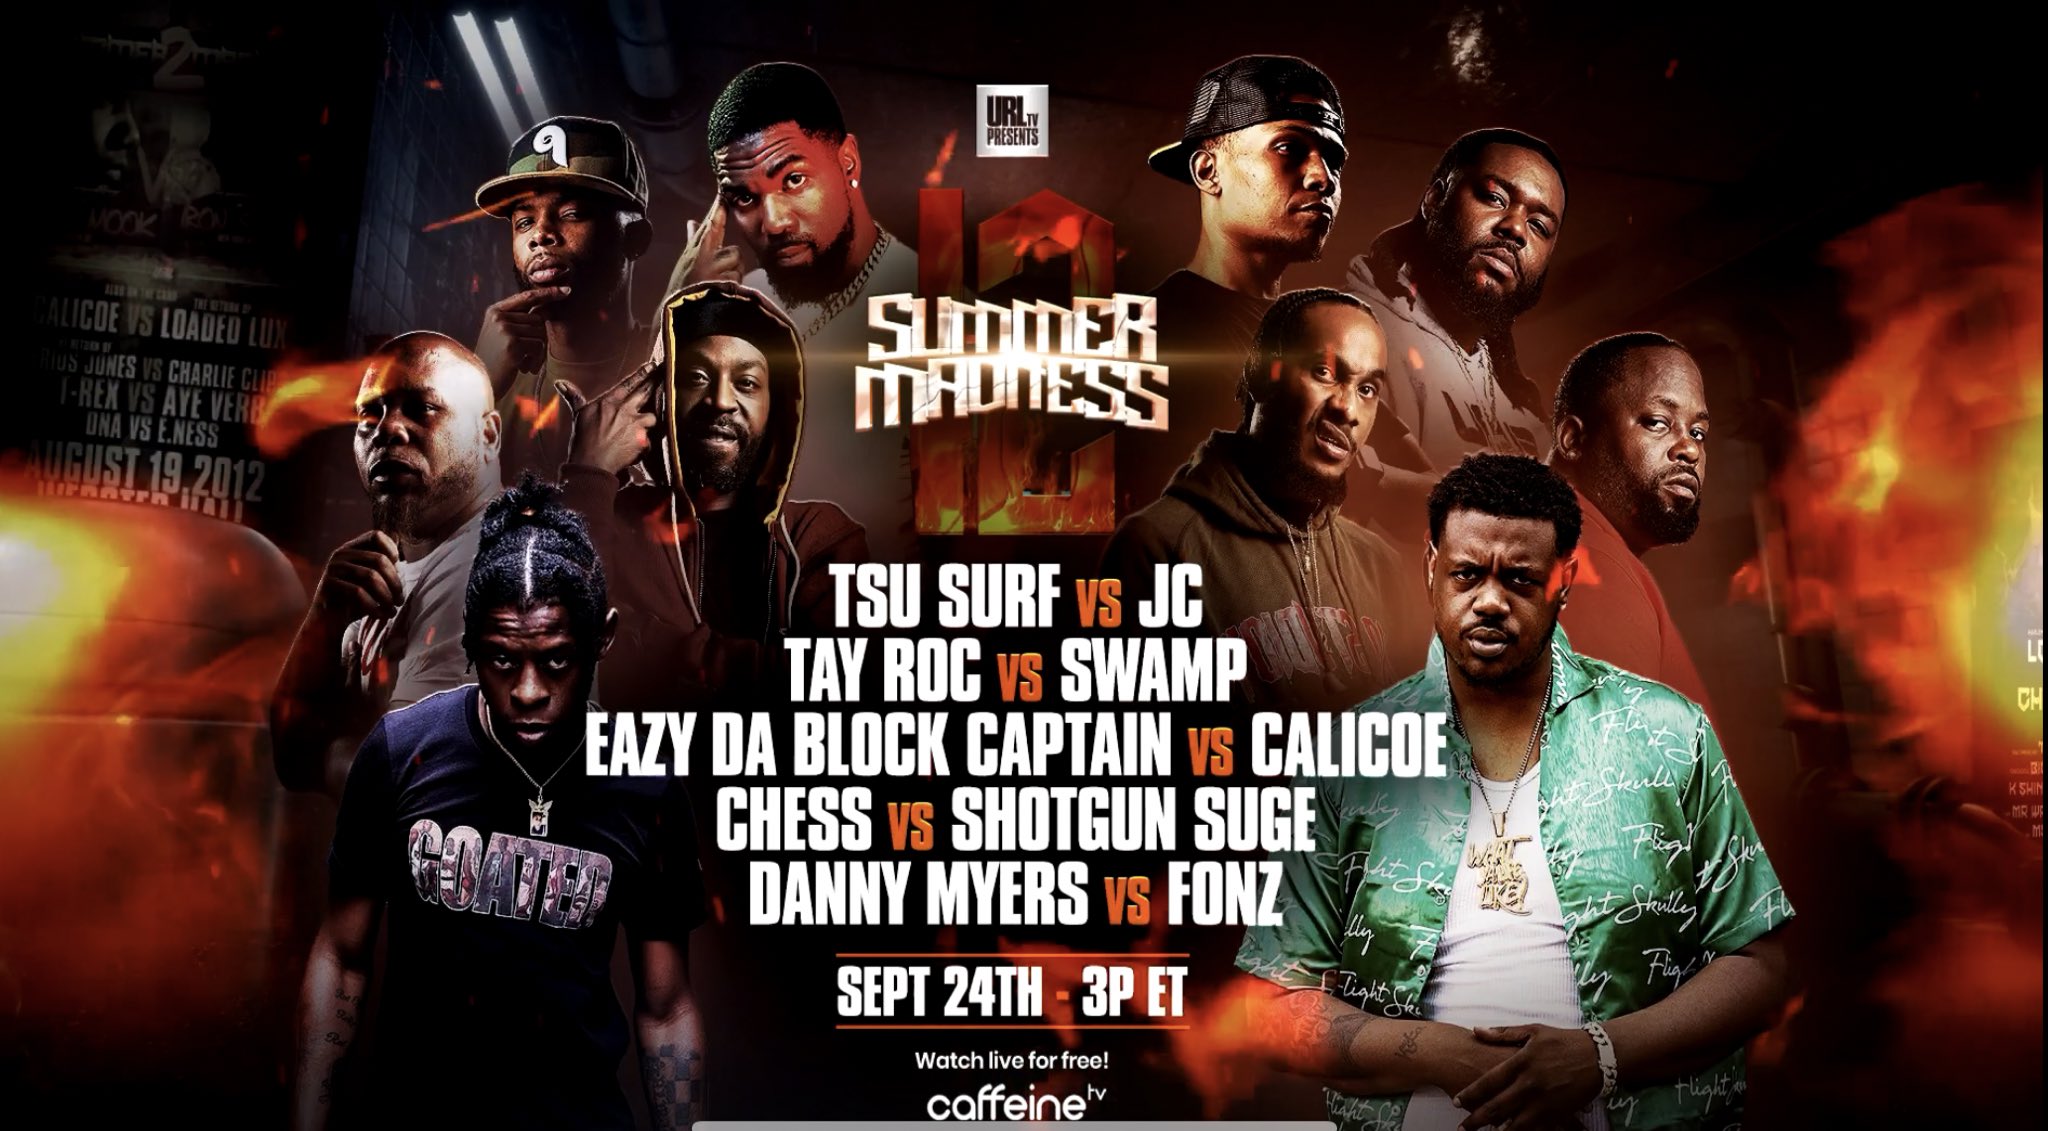 Summer Madness 12 Url Ultimate Rap League Battle Rap Event Versetracker